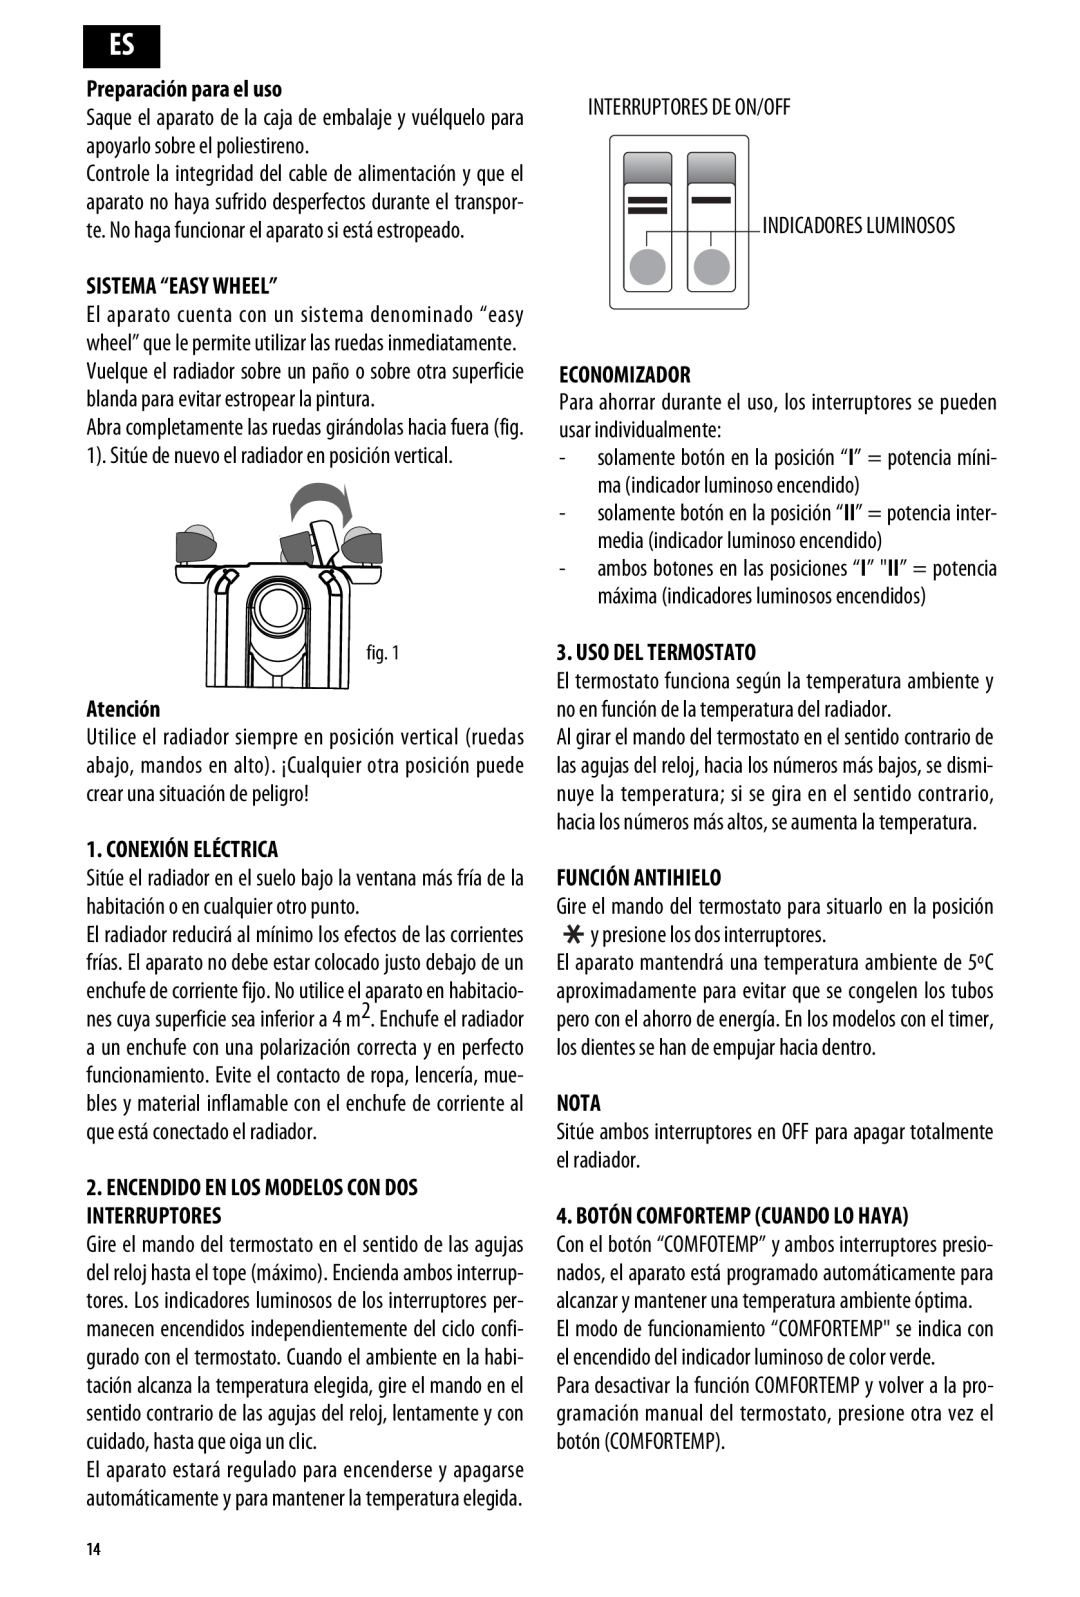 DeLonghi ME 10 manual Preparación para el uso, Atención, Conexión Eléctrica, Economizador, Función Antihielo, Nota 